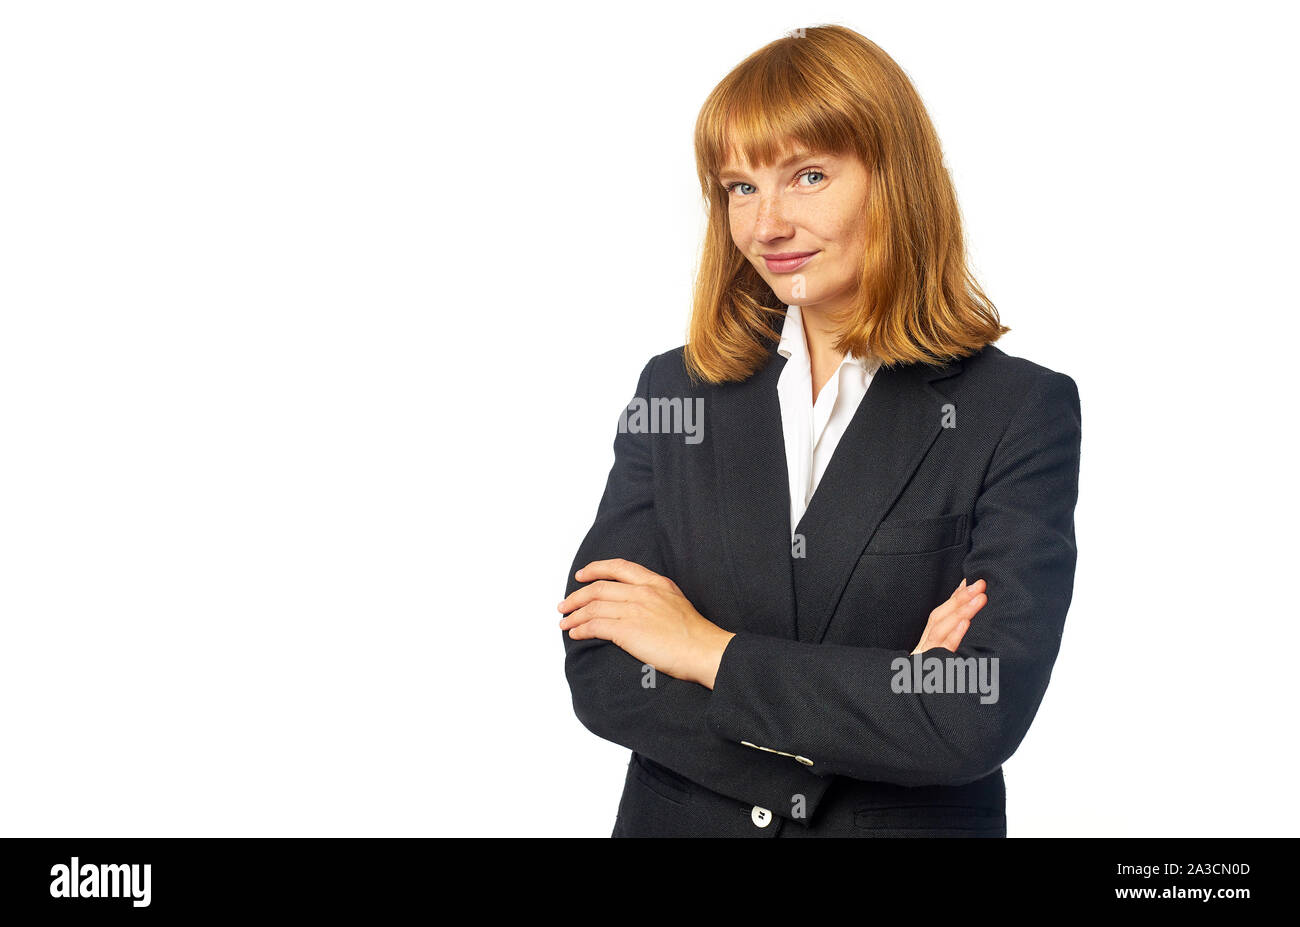 Image of female office worker habillé en chemise blanche et blazer sombre. Femme rousse en vêtements d'affaires regardant la caméra et smiling Banque D'Images